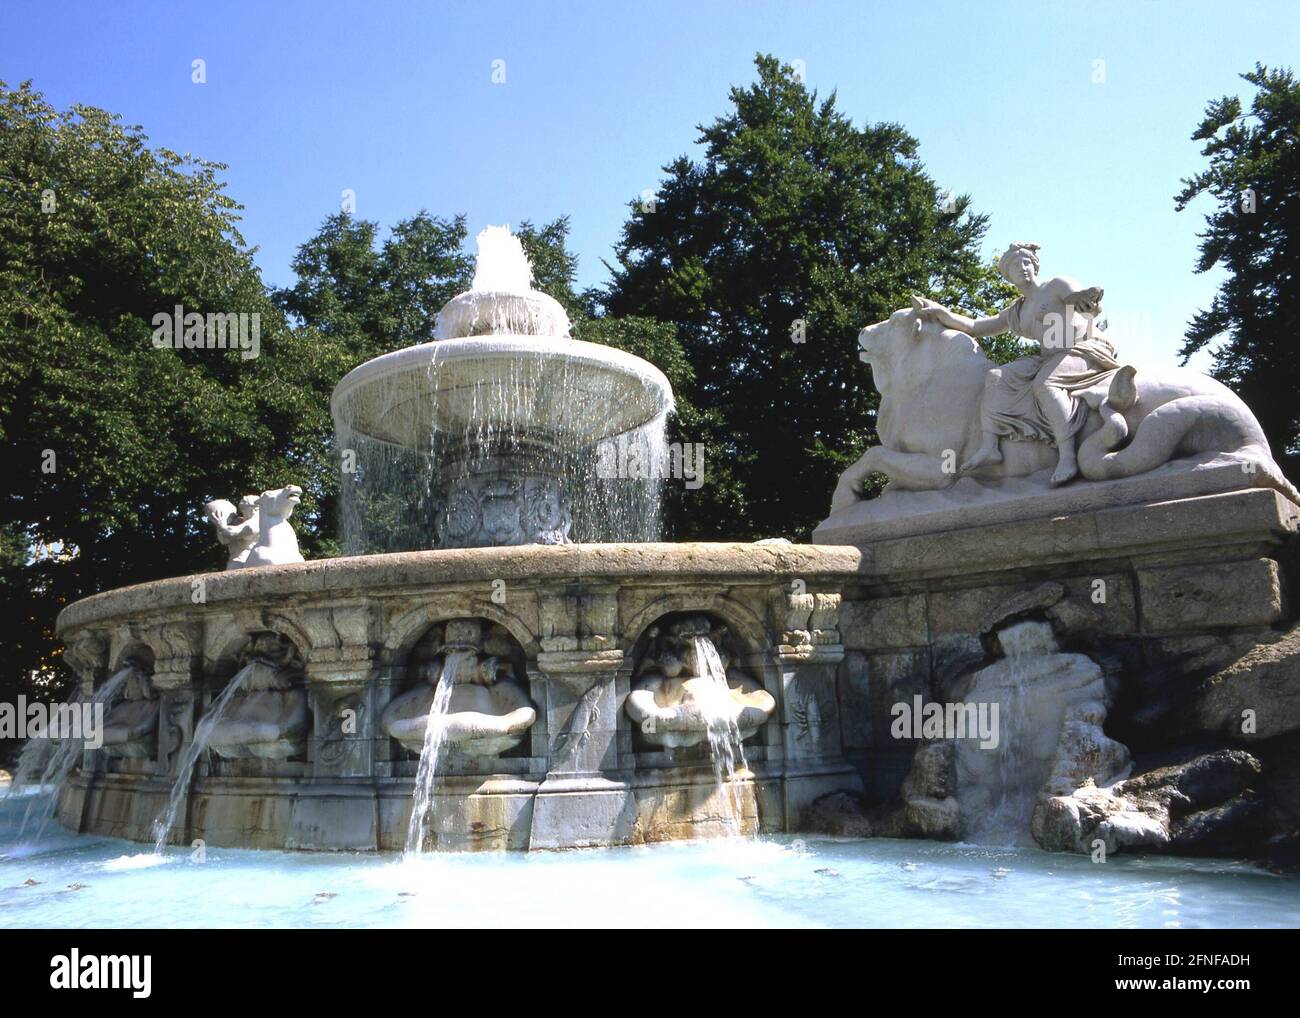 Date de la photographie: 12.07.1994 la fontaine Wittelsbach sur Lenbachplatz est considérée comme l'une des plus belles fontaines de la ville. Il a été construit en 1895 par Adolf von Hildebrand. [traduction automatique] Banque D'Images